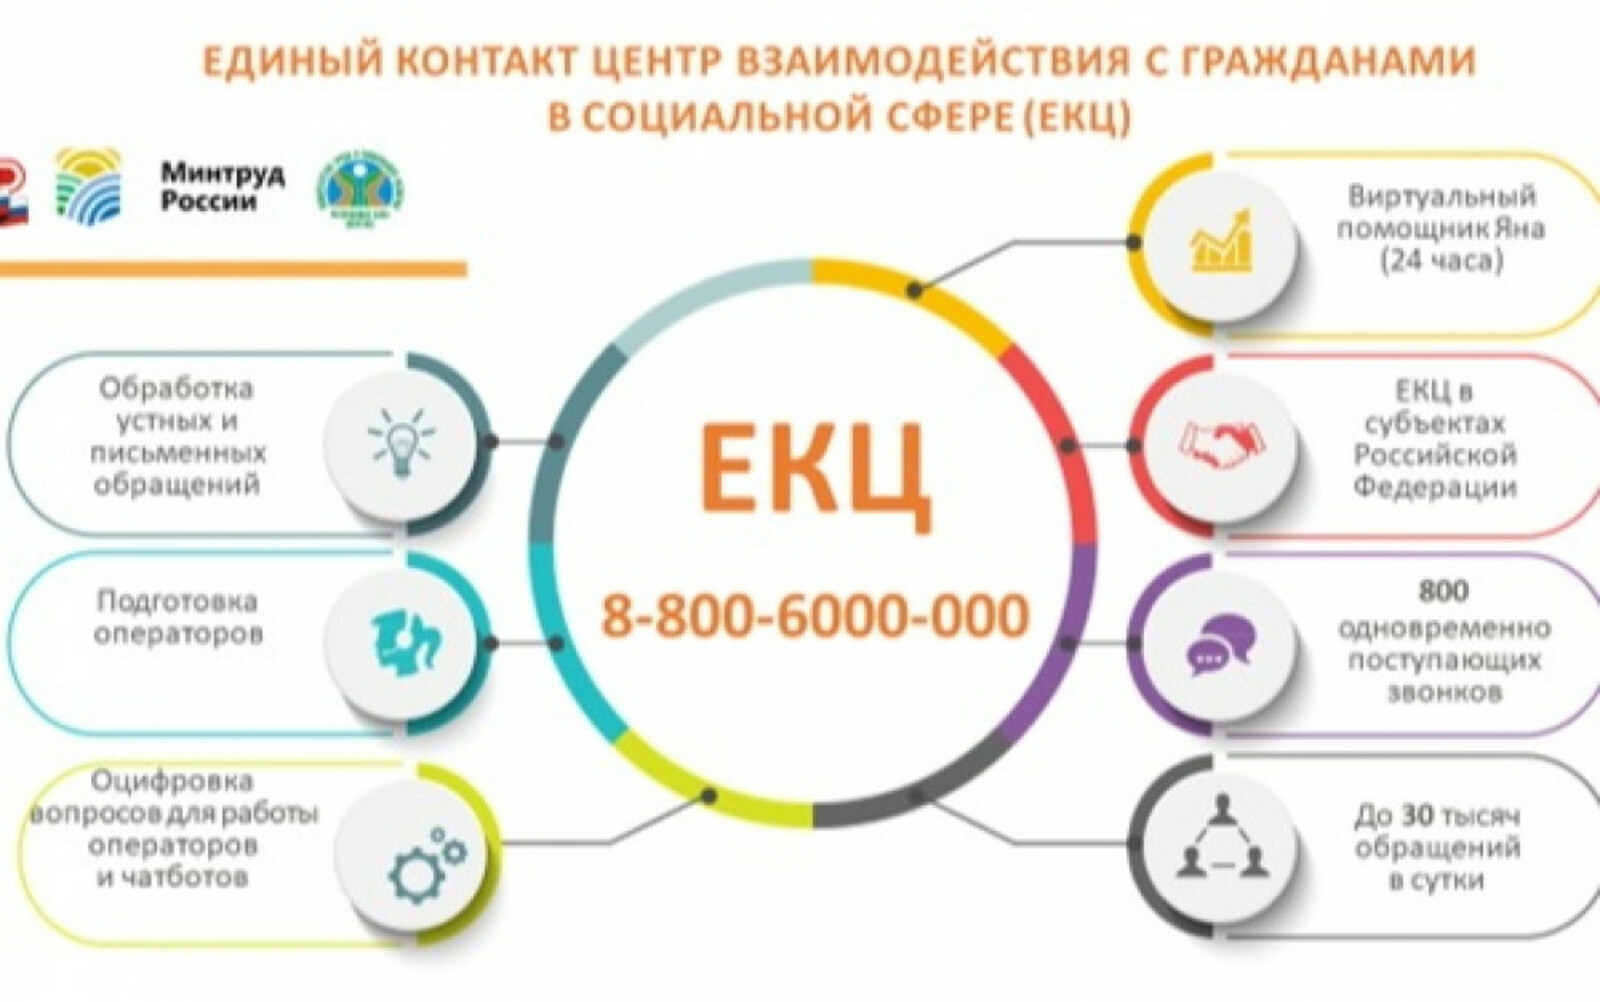 Жители Башкортостана могут проконсультироваться по мерам социальной поддержки по бесплатному номеру телефона 8-800-600-00-00